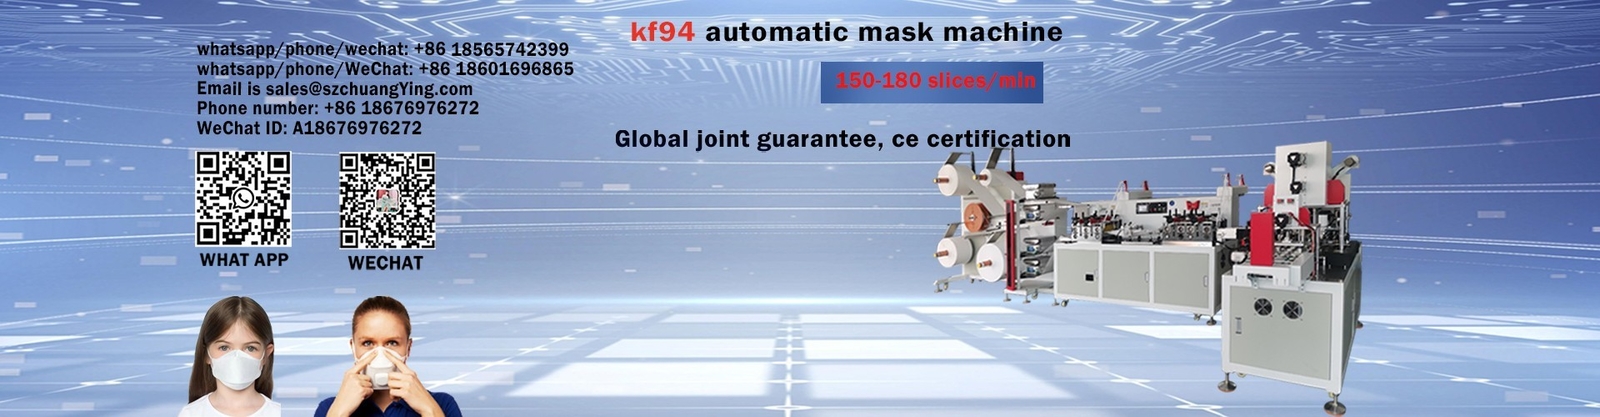 جودة آلة صنع قناع الوجه KN95 مصنع